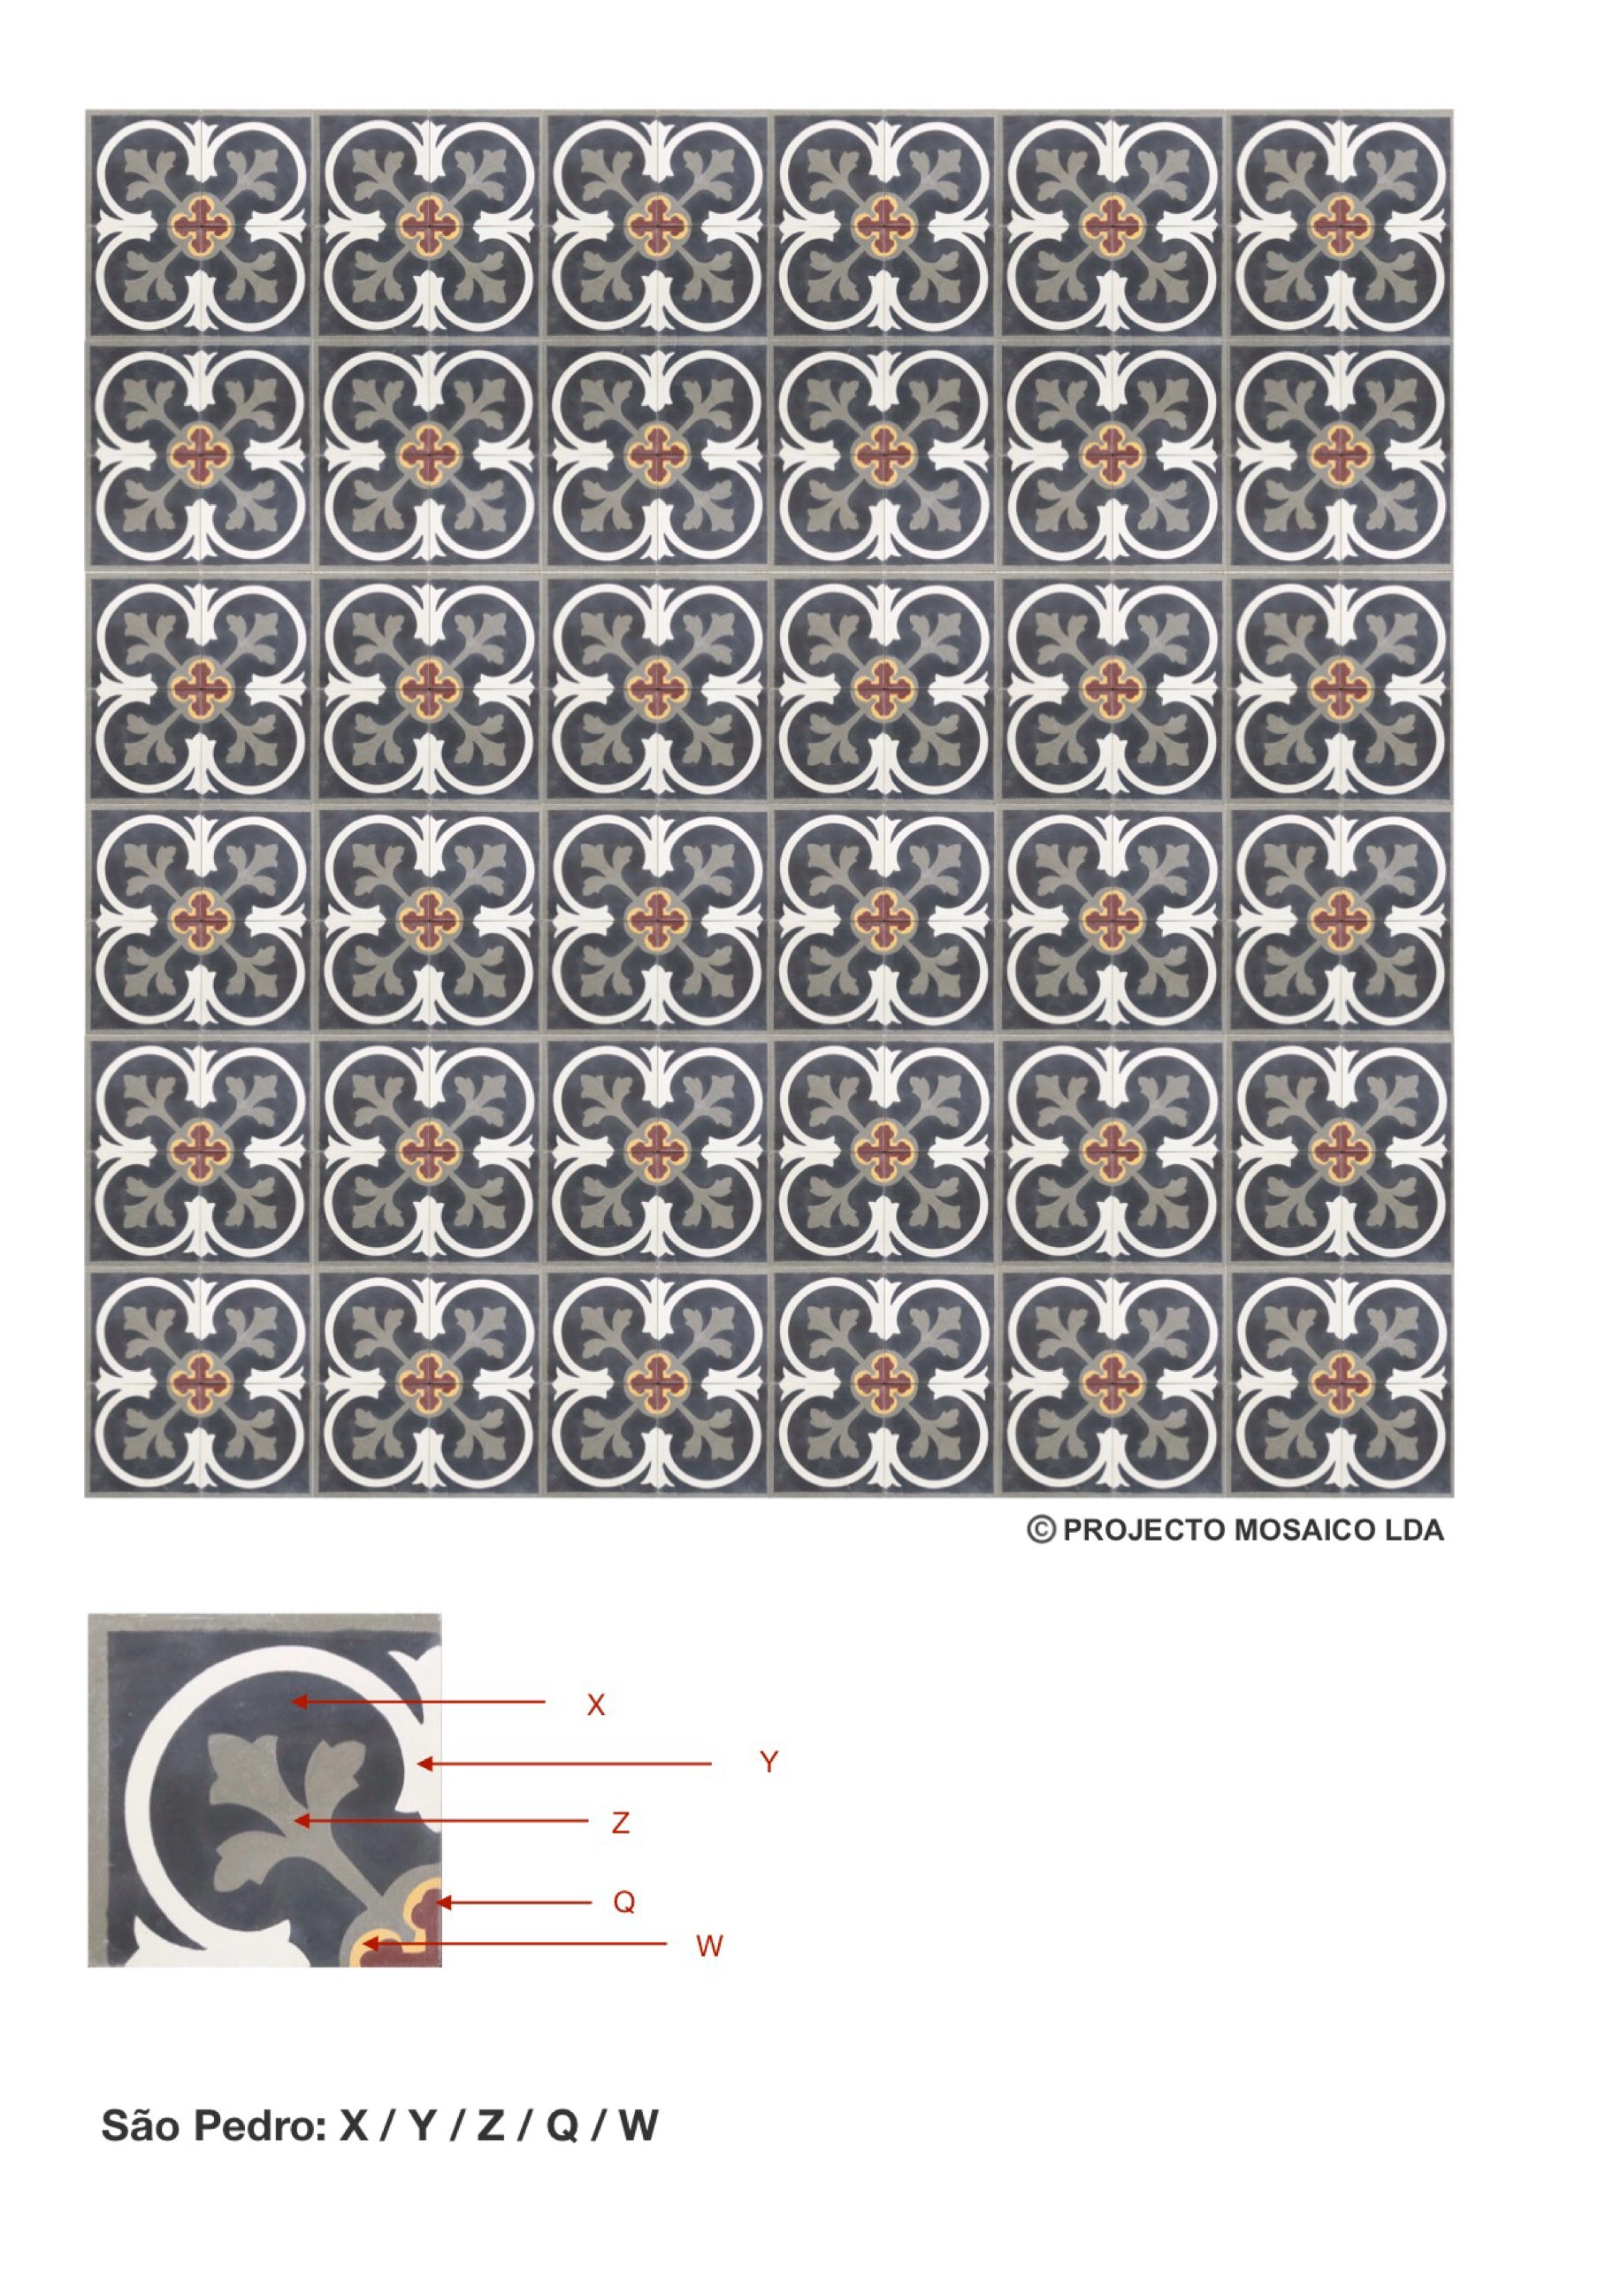 illustração de aplicação do mosaico hidráulico ref: São Pedro